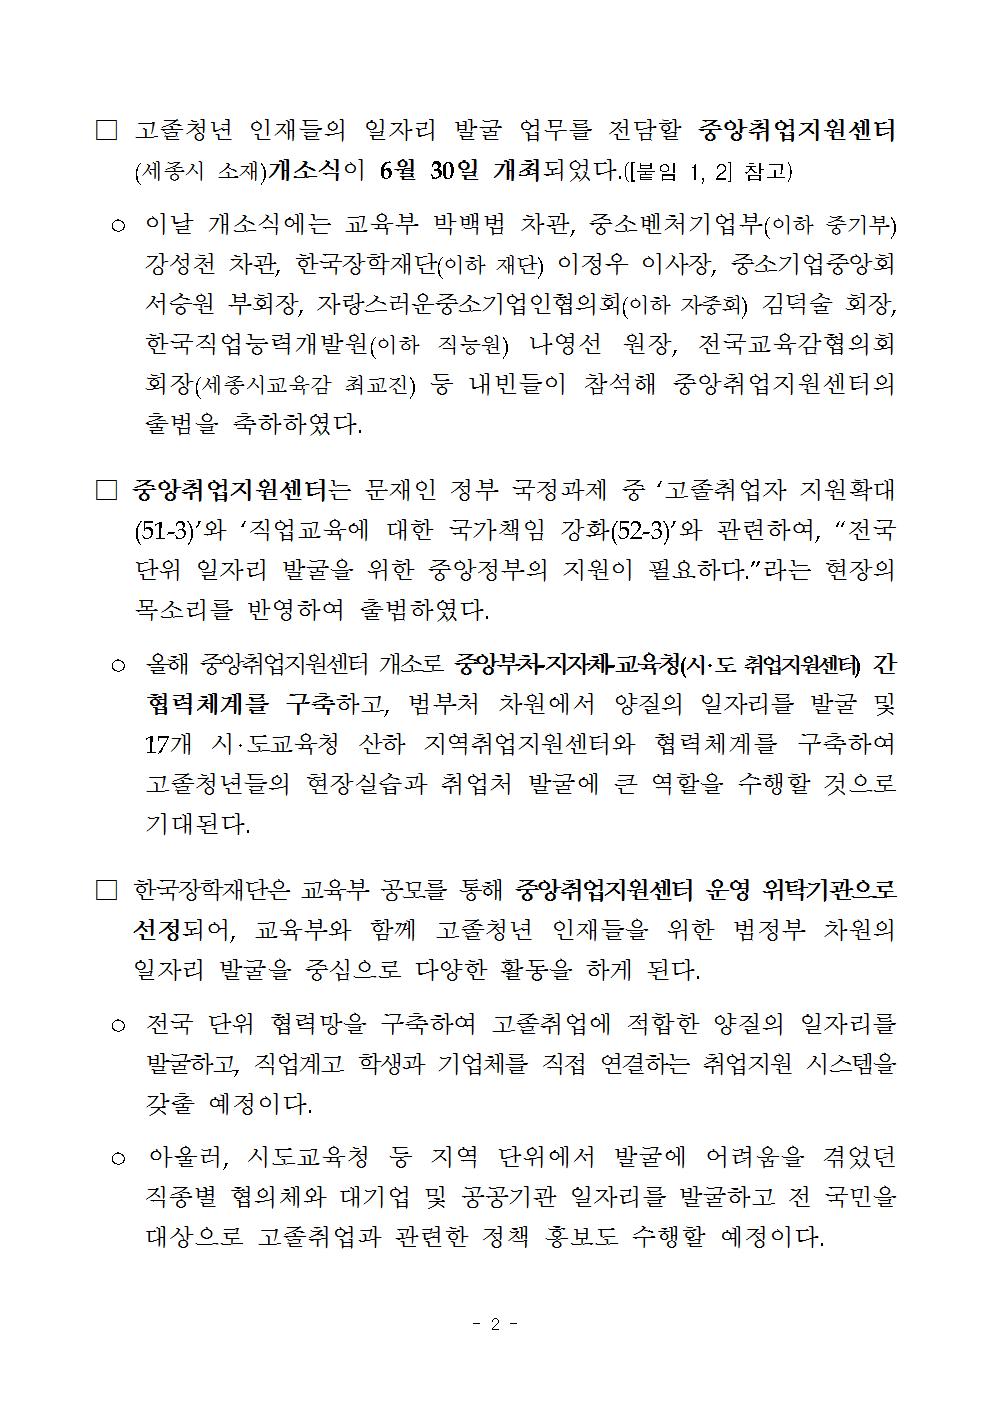 06-30(화)[보도자료] 한국장학재단 고졸인재 취업 지원을 위한 중앙취업지원센터 개소식 개최002.jpg